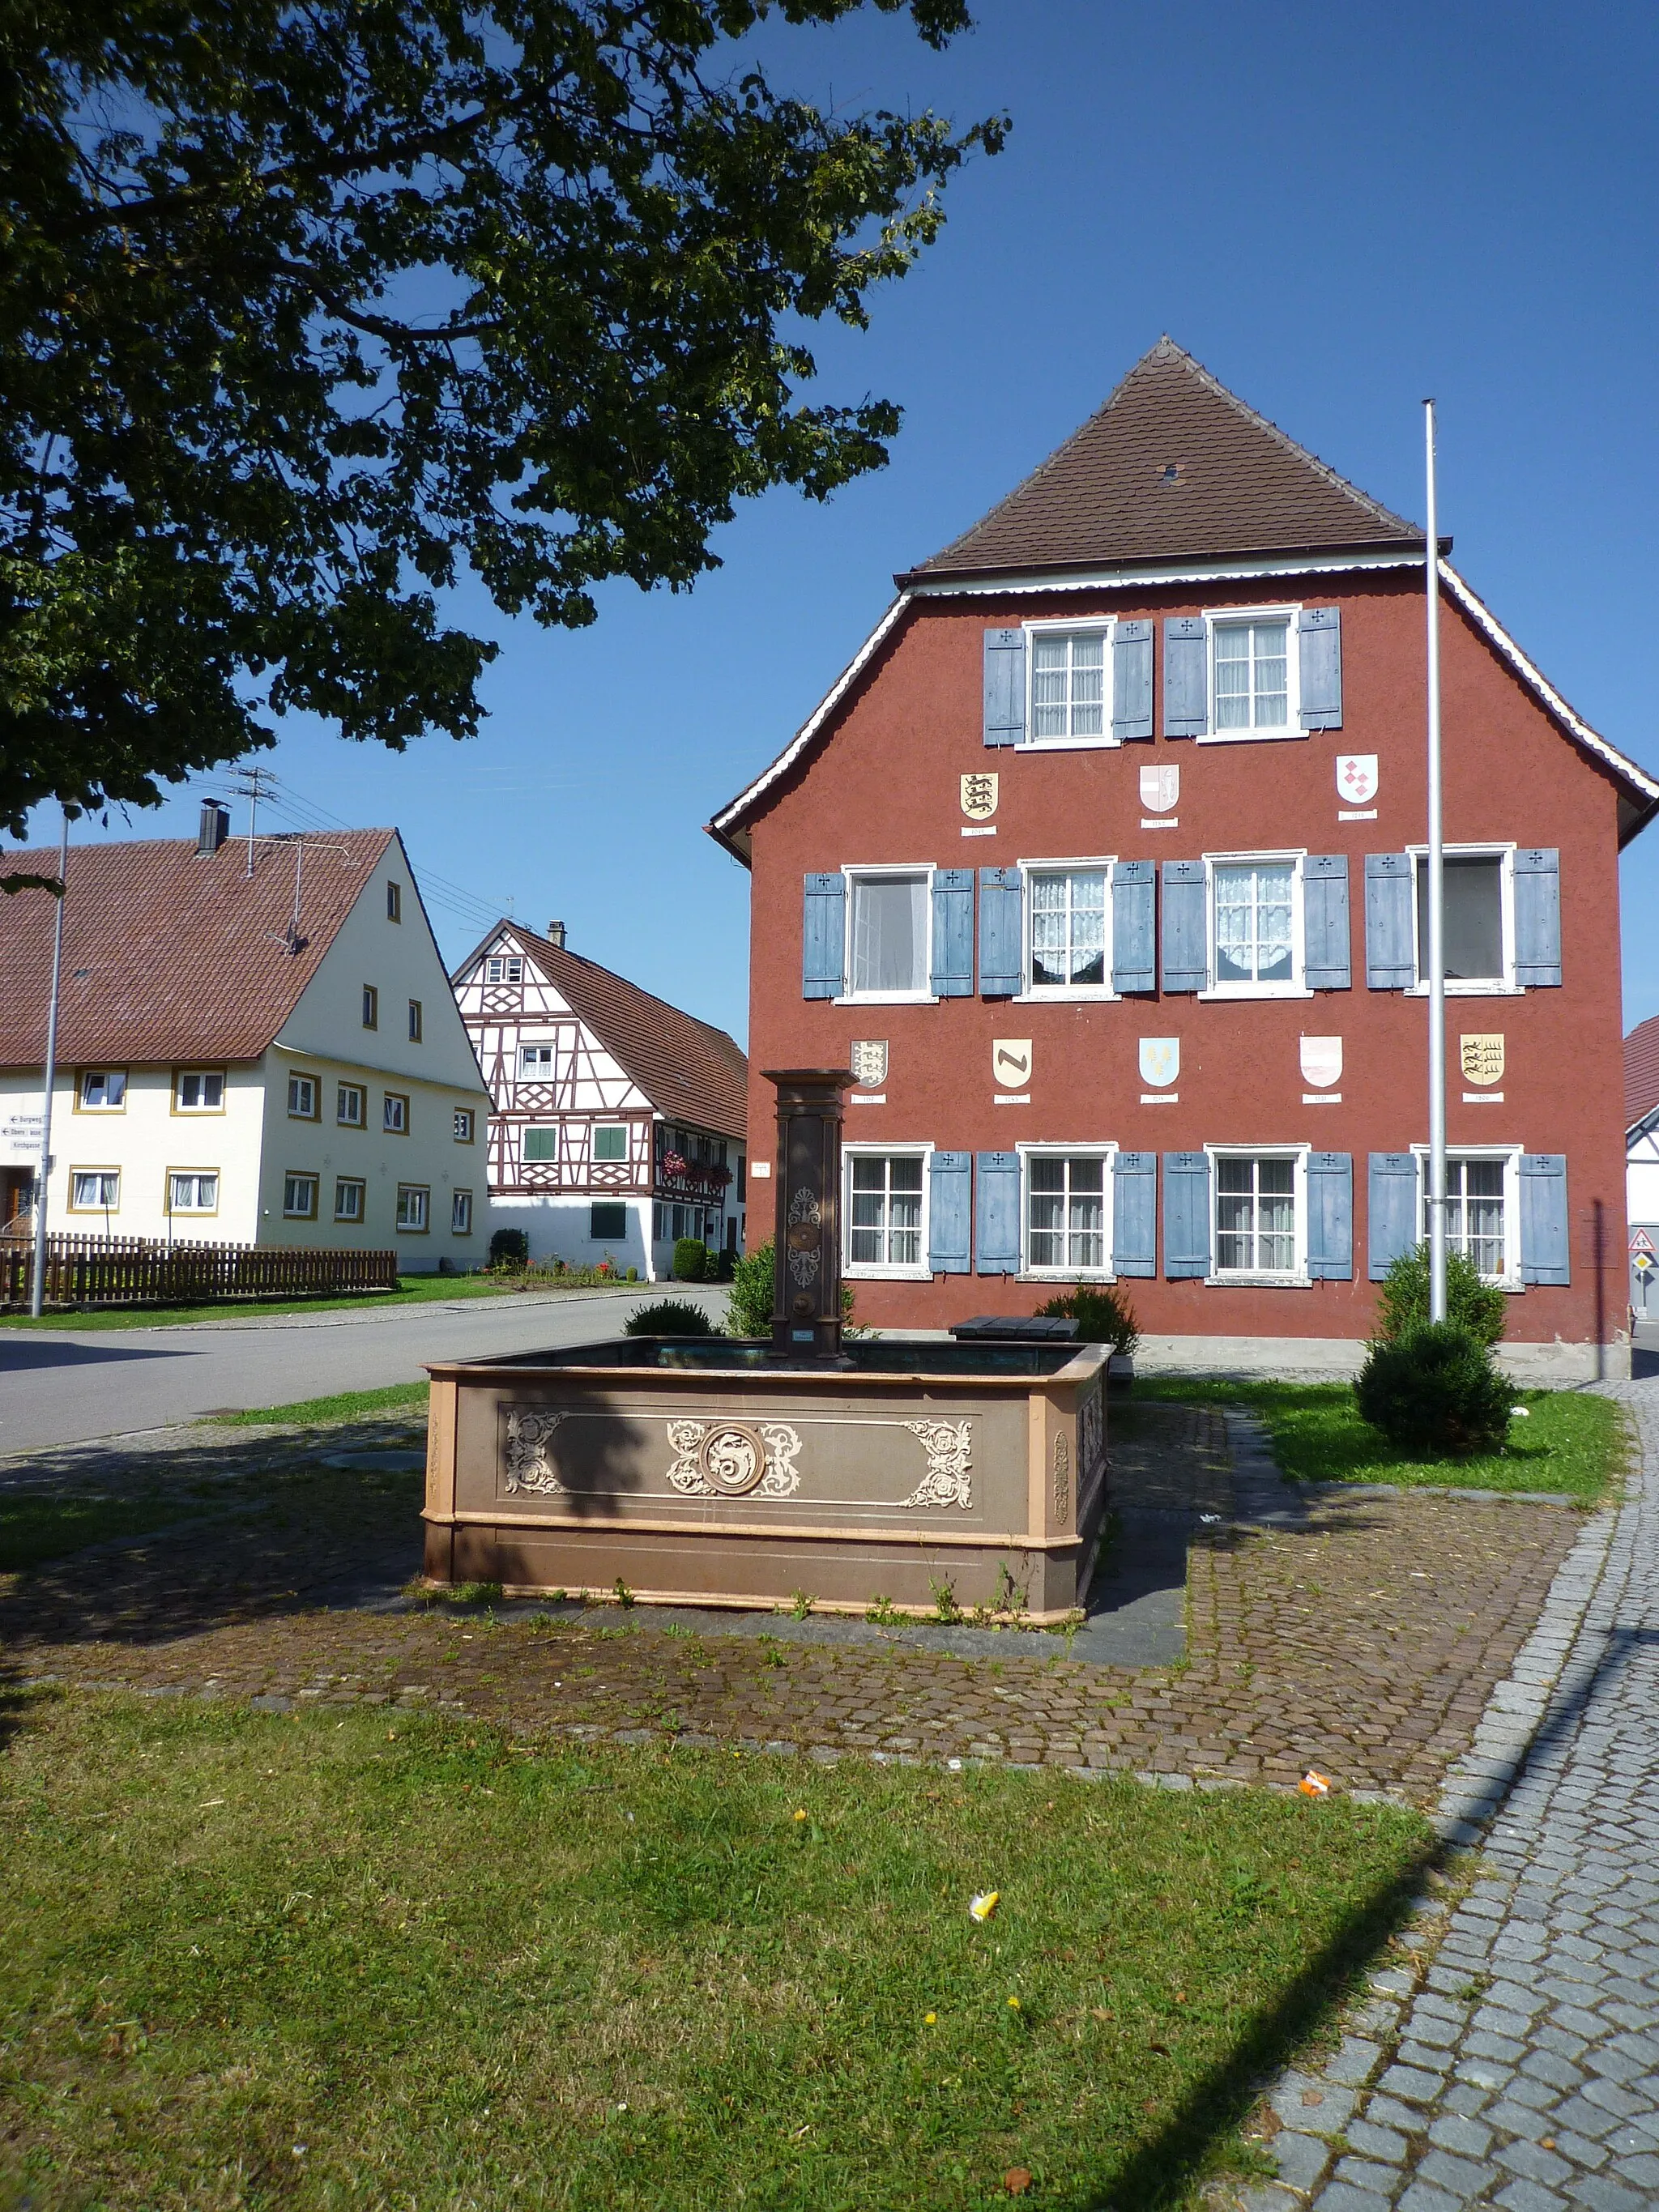 Photo showing: Winterstettenstadt - Town hall